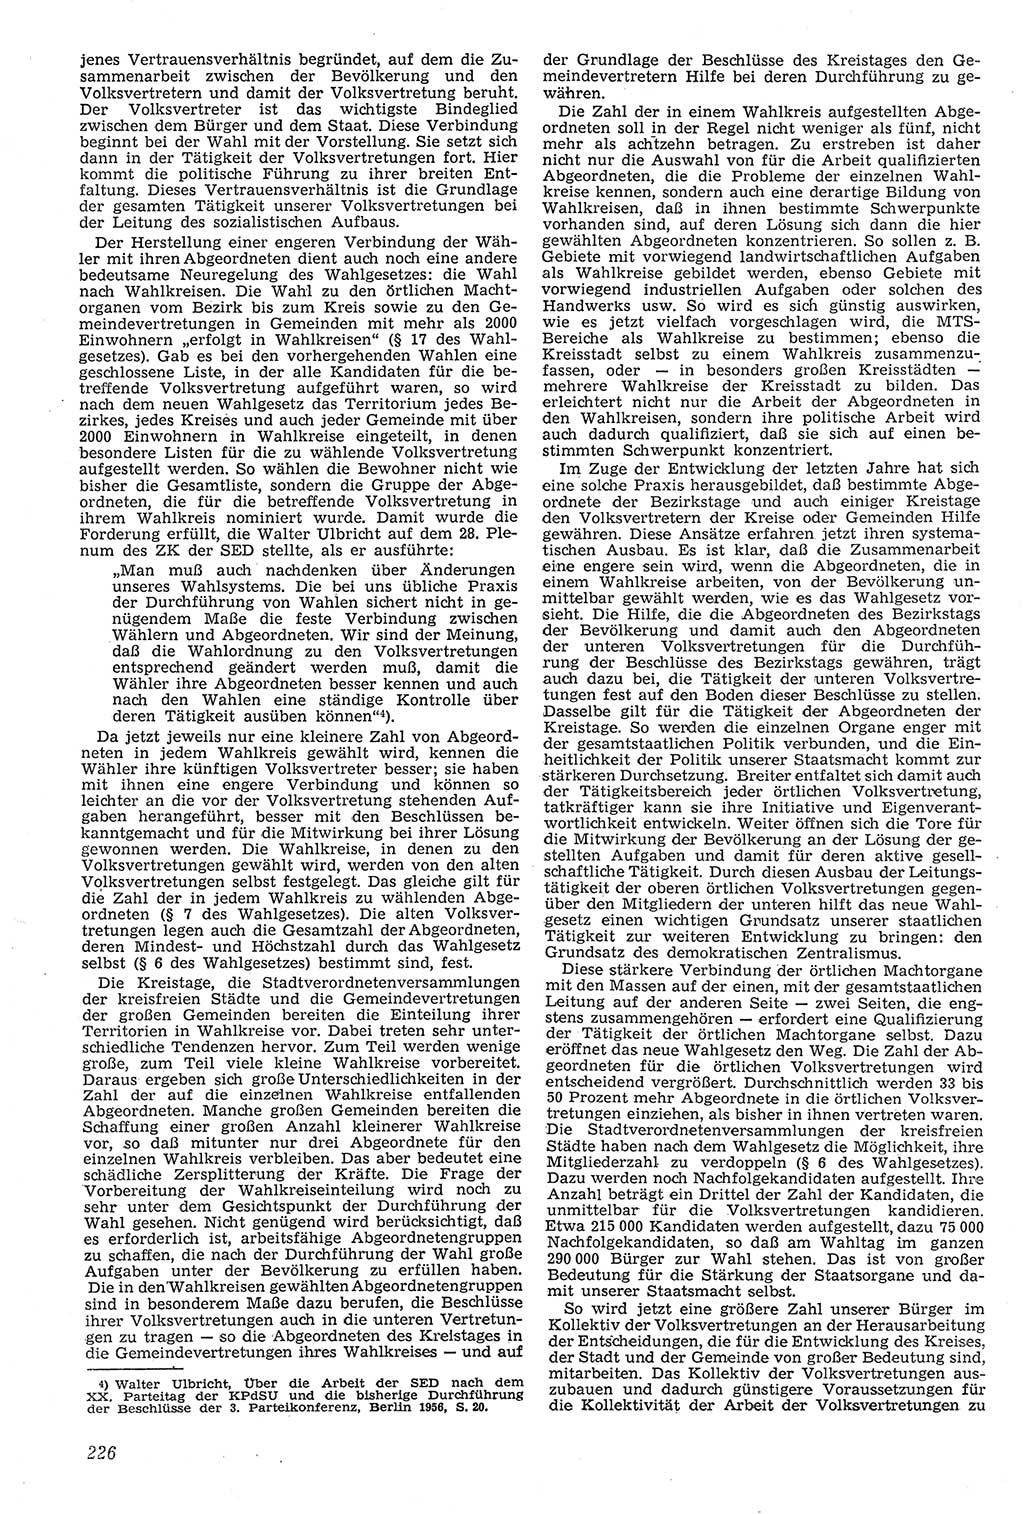 Neue Justiz (NJ), Zeitschrift für Recht und Rechtswissenschaft [Deutsche Demokratische Republik (DDR)], 11. Jahrgang 1957, Seite 226 (NJ DDR 1957, S. 226)